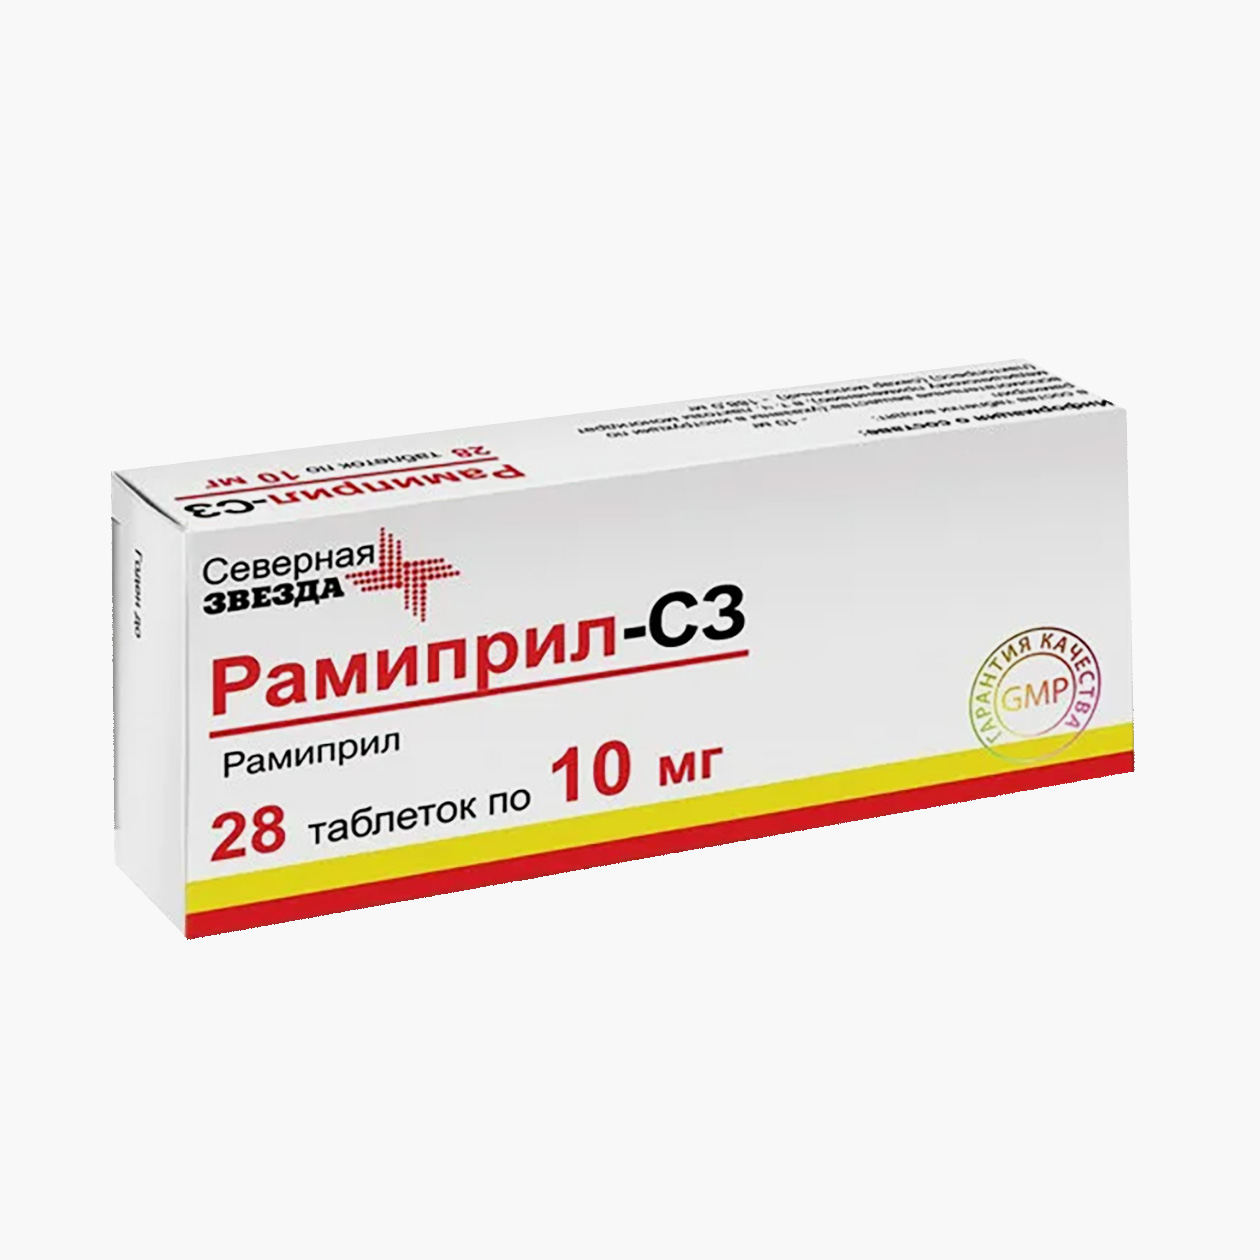 «Рамиприл-С3» по 10 мг. Аналог по действующему веществу стоит почти в два раза дешевле оригинала